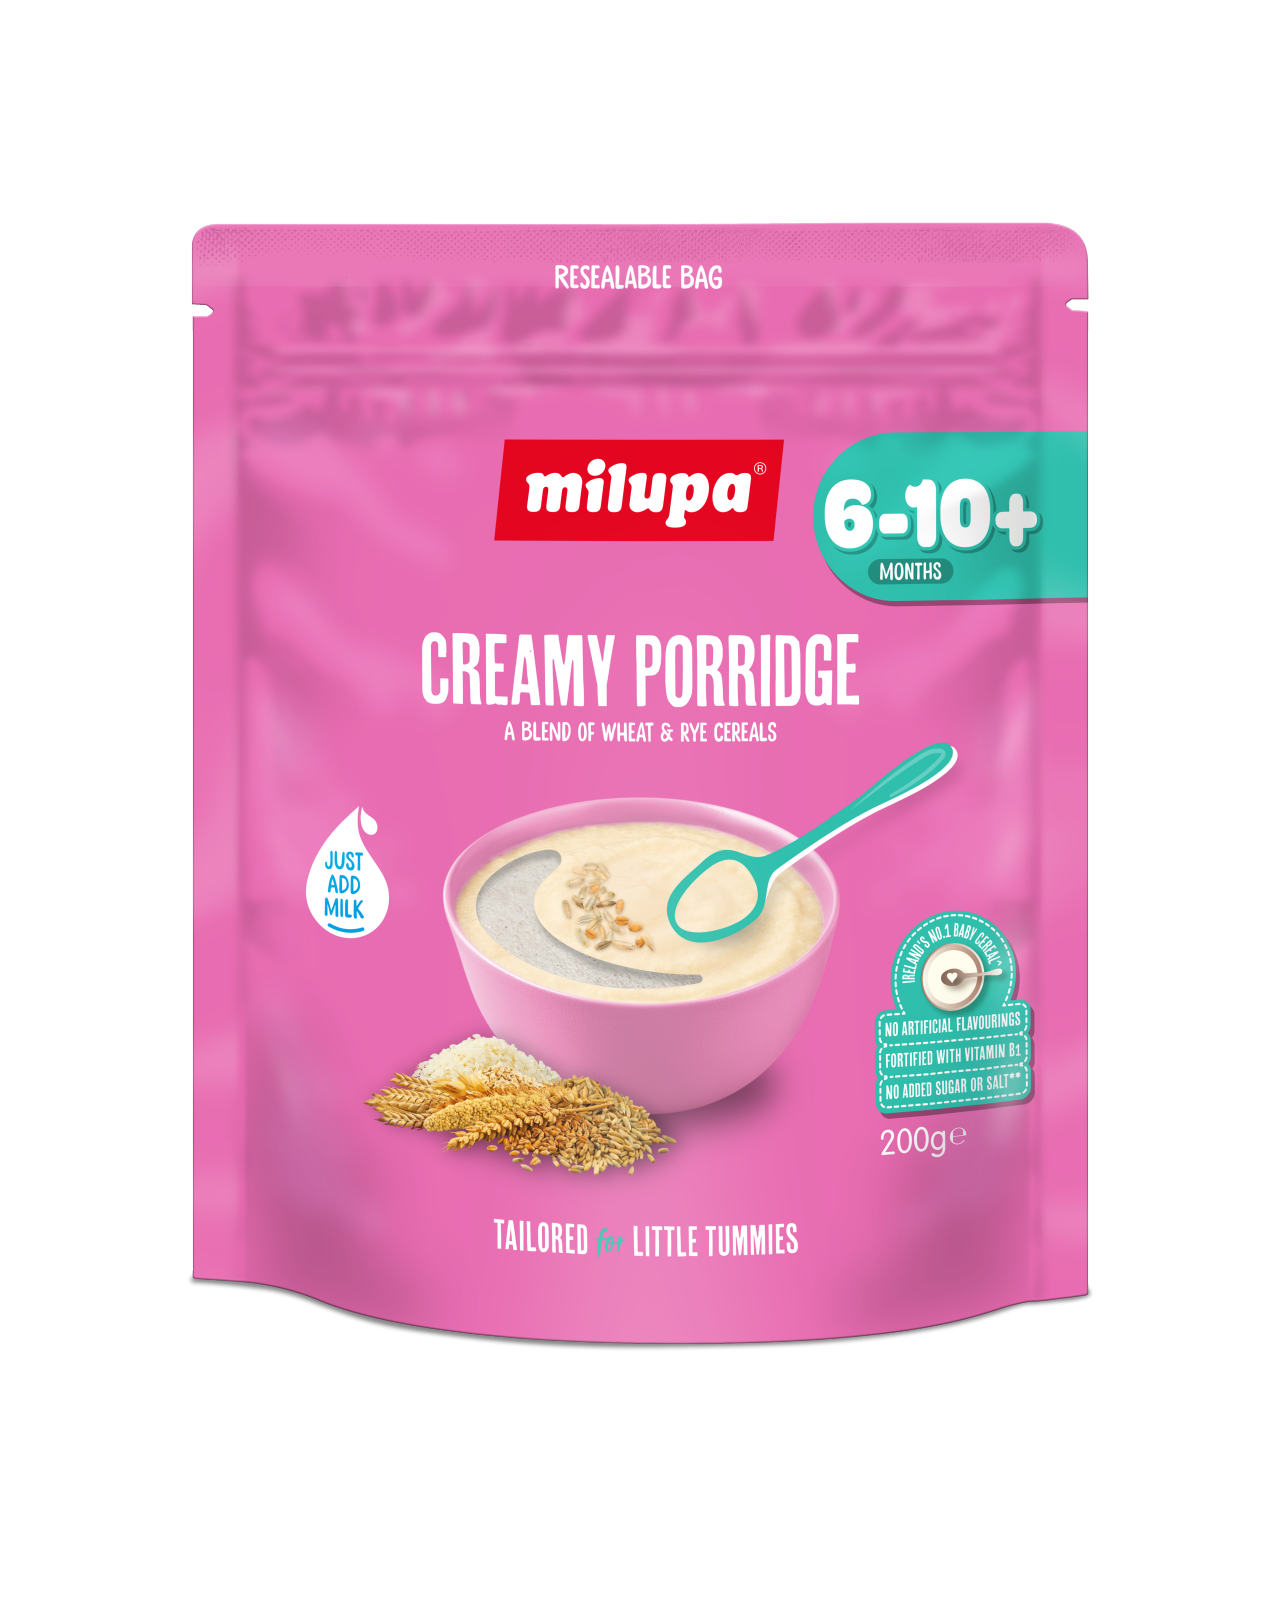 Creamy porridge